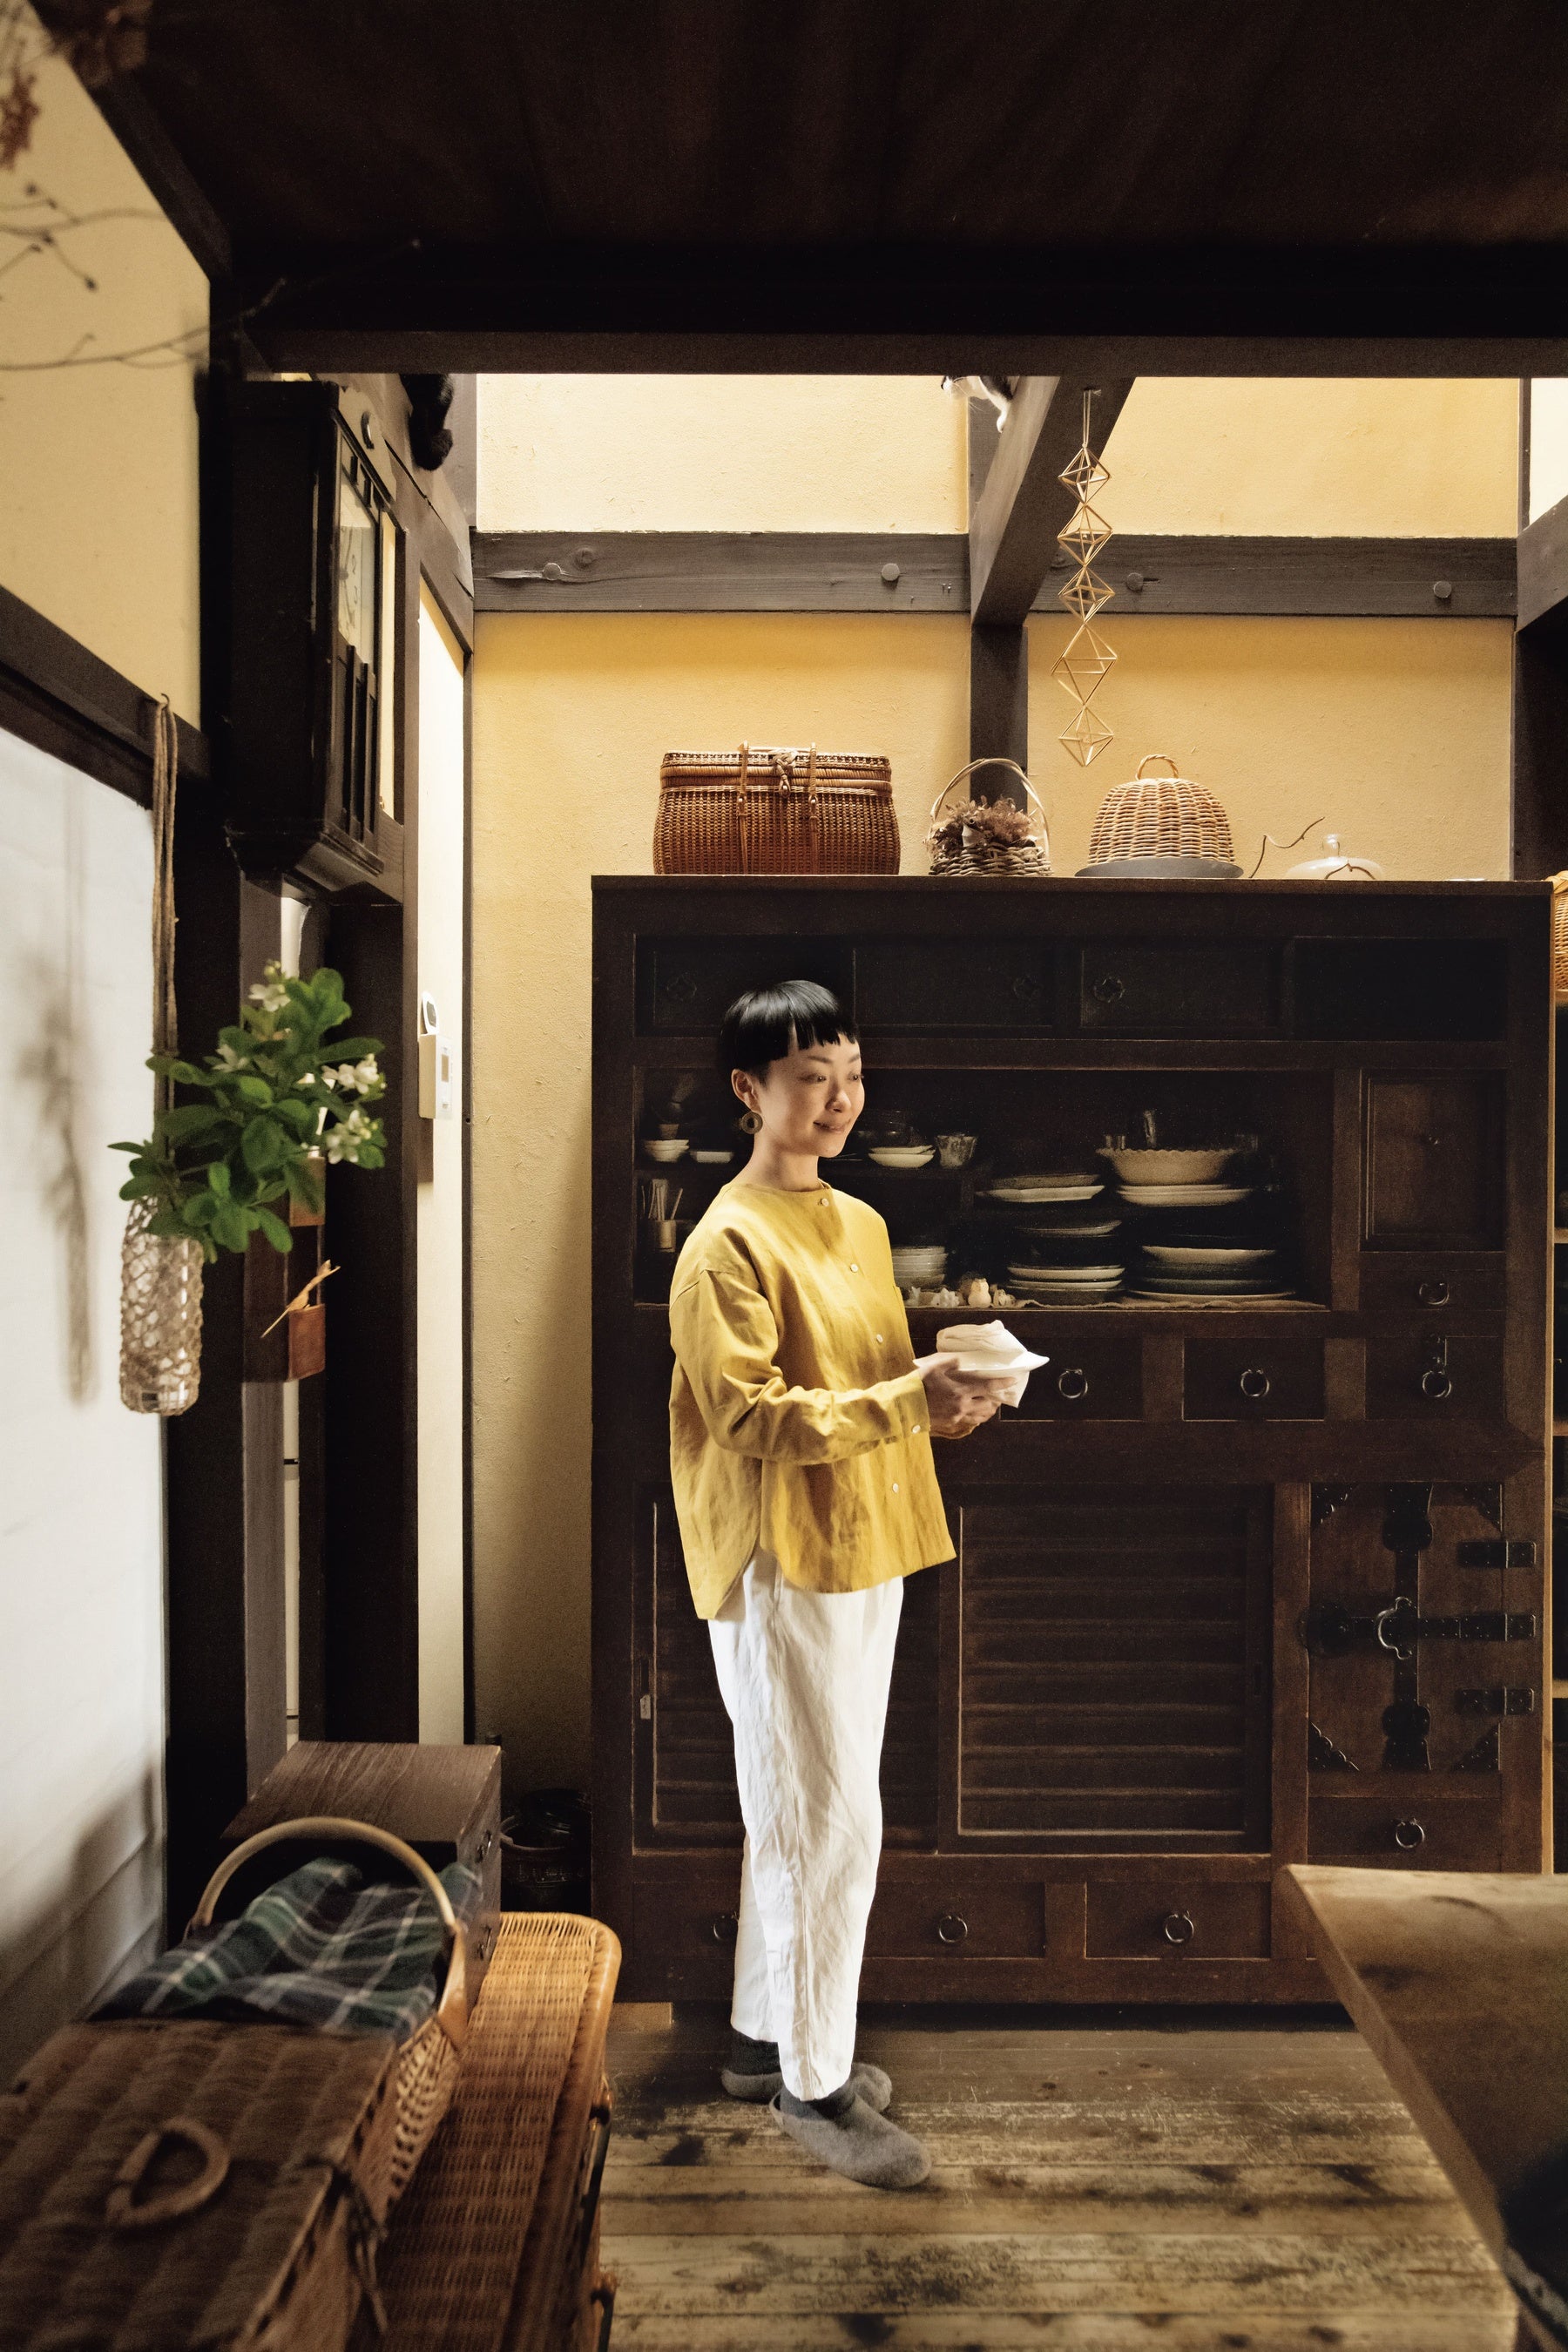 あこがれの京都町家暮らしの魅力とは。手づくり暮らし研究家・美濃羽まゆみさんから学ぶ幸せのかたち。